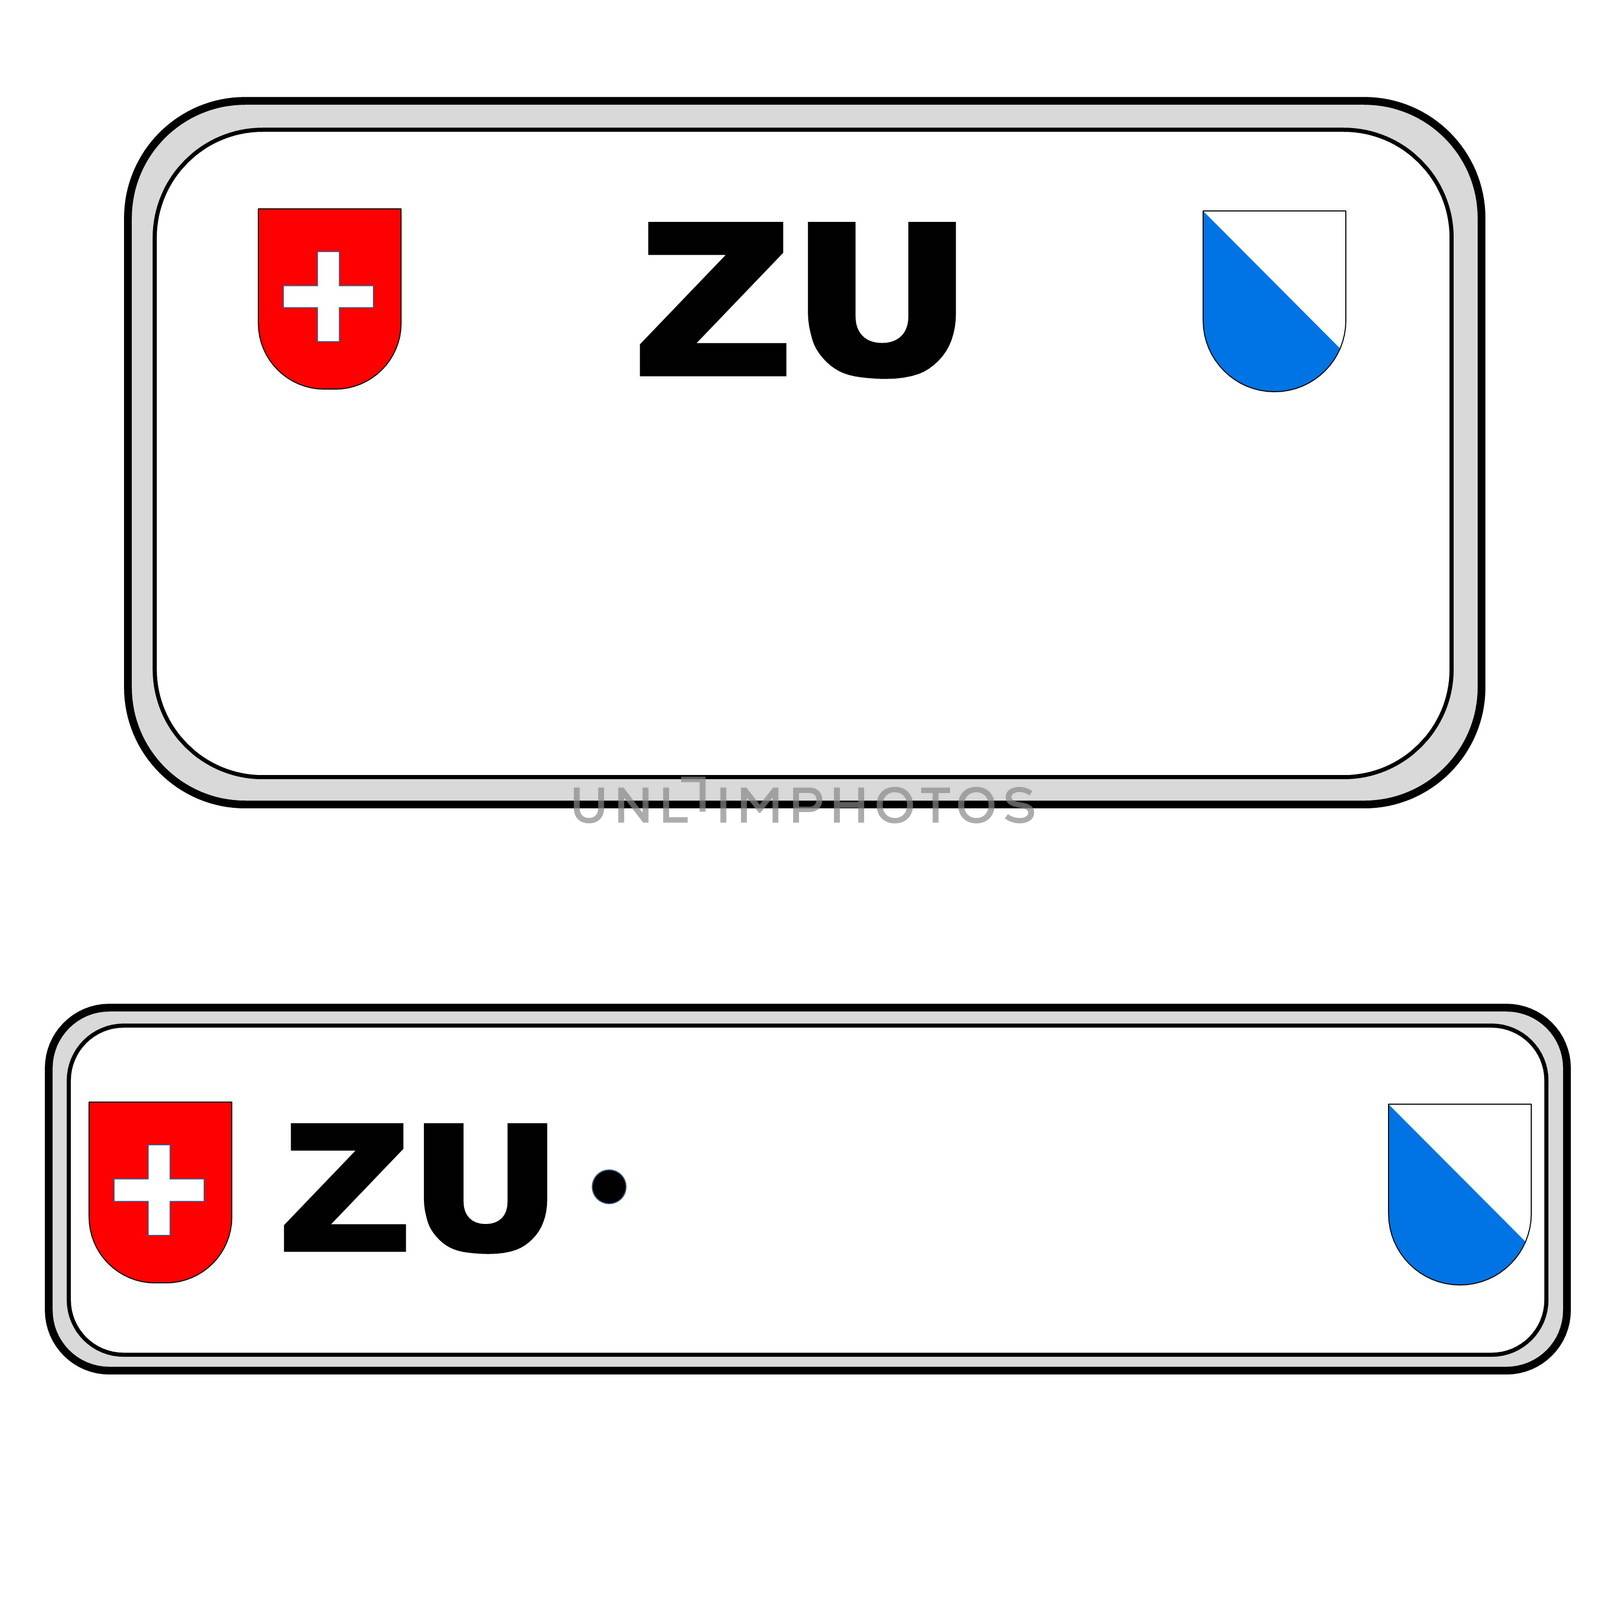 Zurich plate number, Switzerland by Elenaphotos21